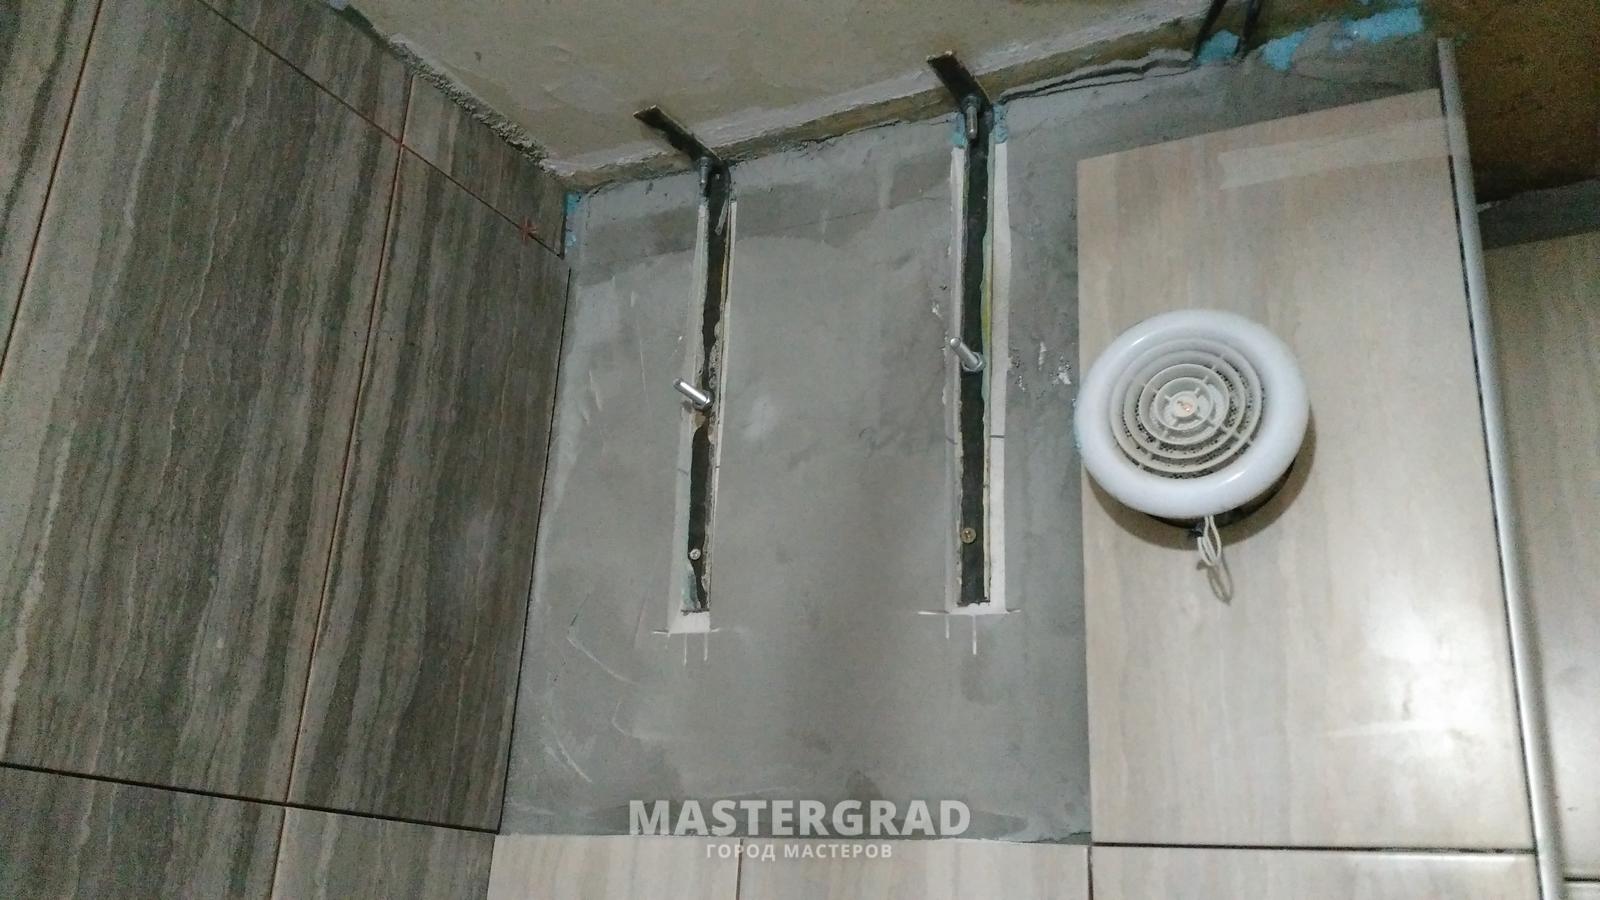 Как повесить водонагреватель на гипсокартон | gipsportal
вешаем водонагреватели на гипсокартонные стены правильно — gipsportal